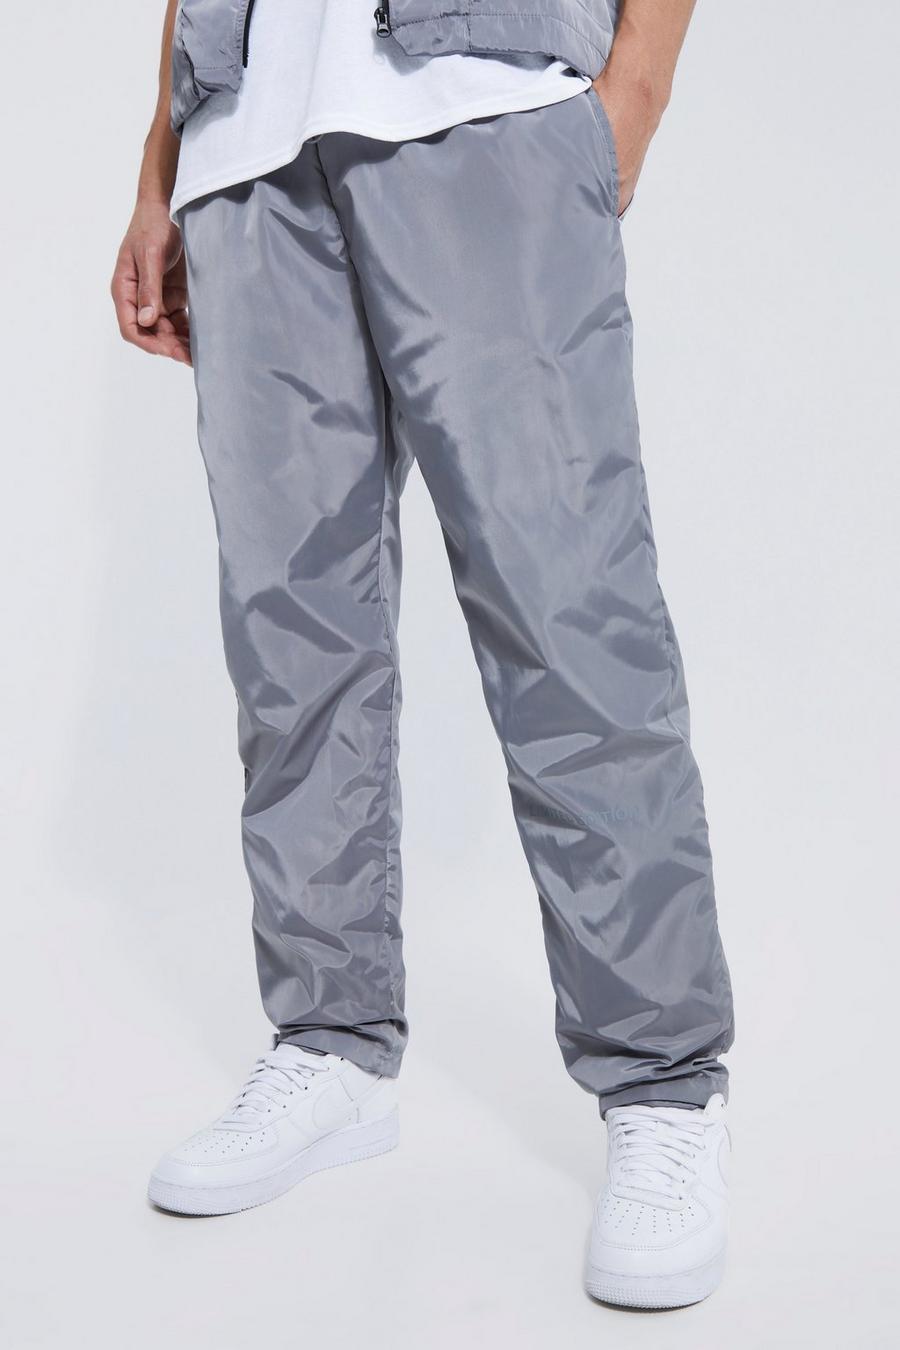 Pantalón Tall Limited Edition con cintura elástica, Grey gris